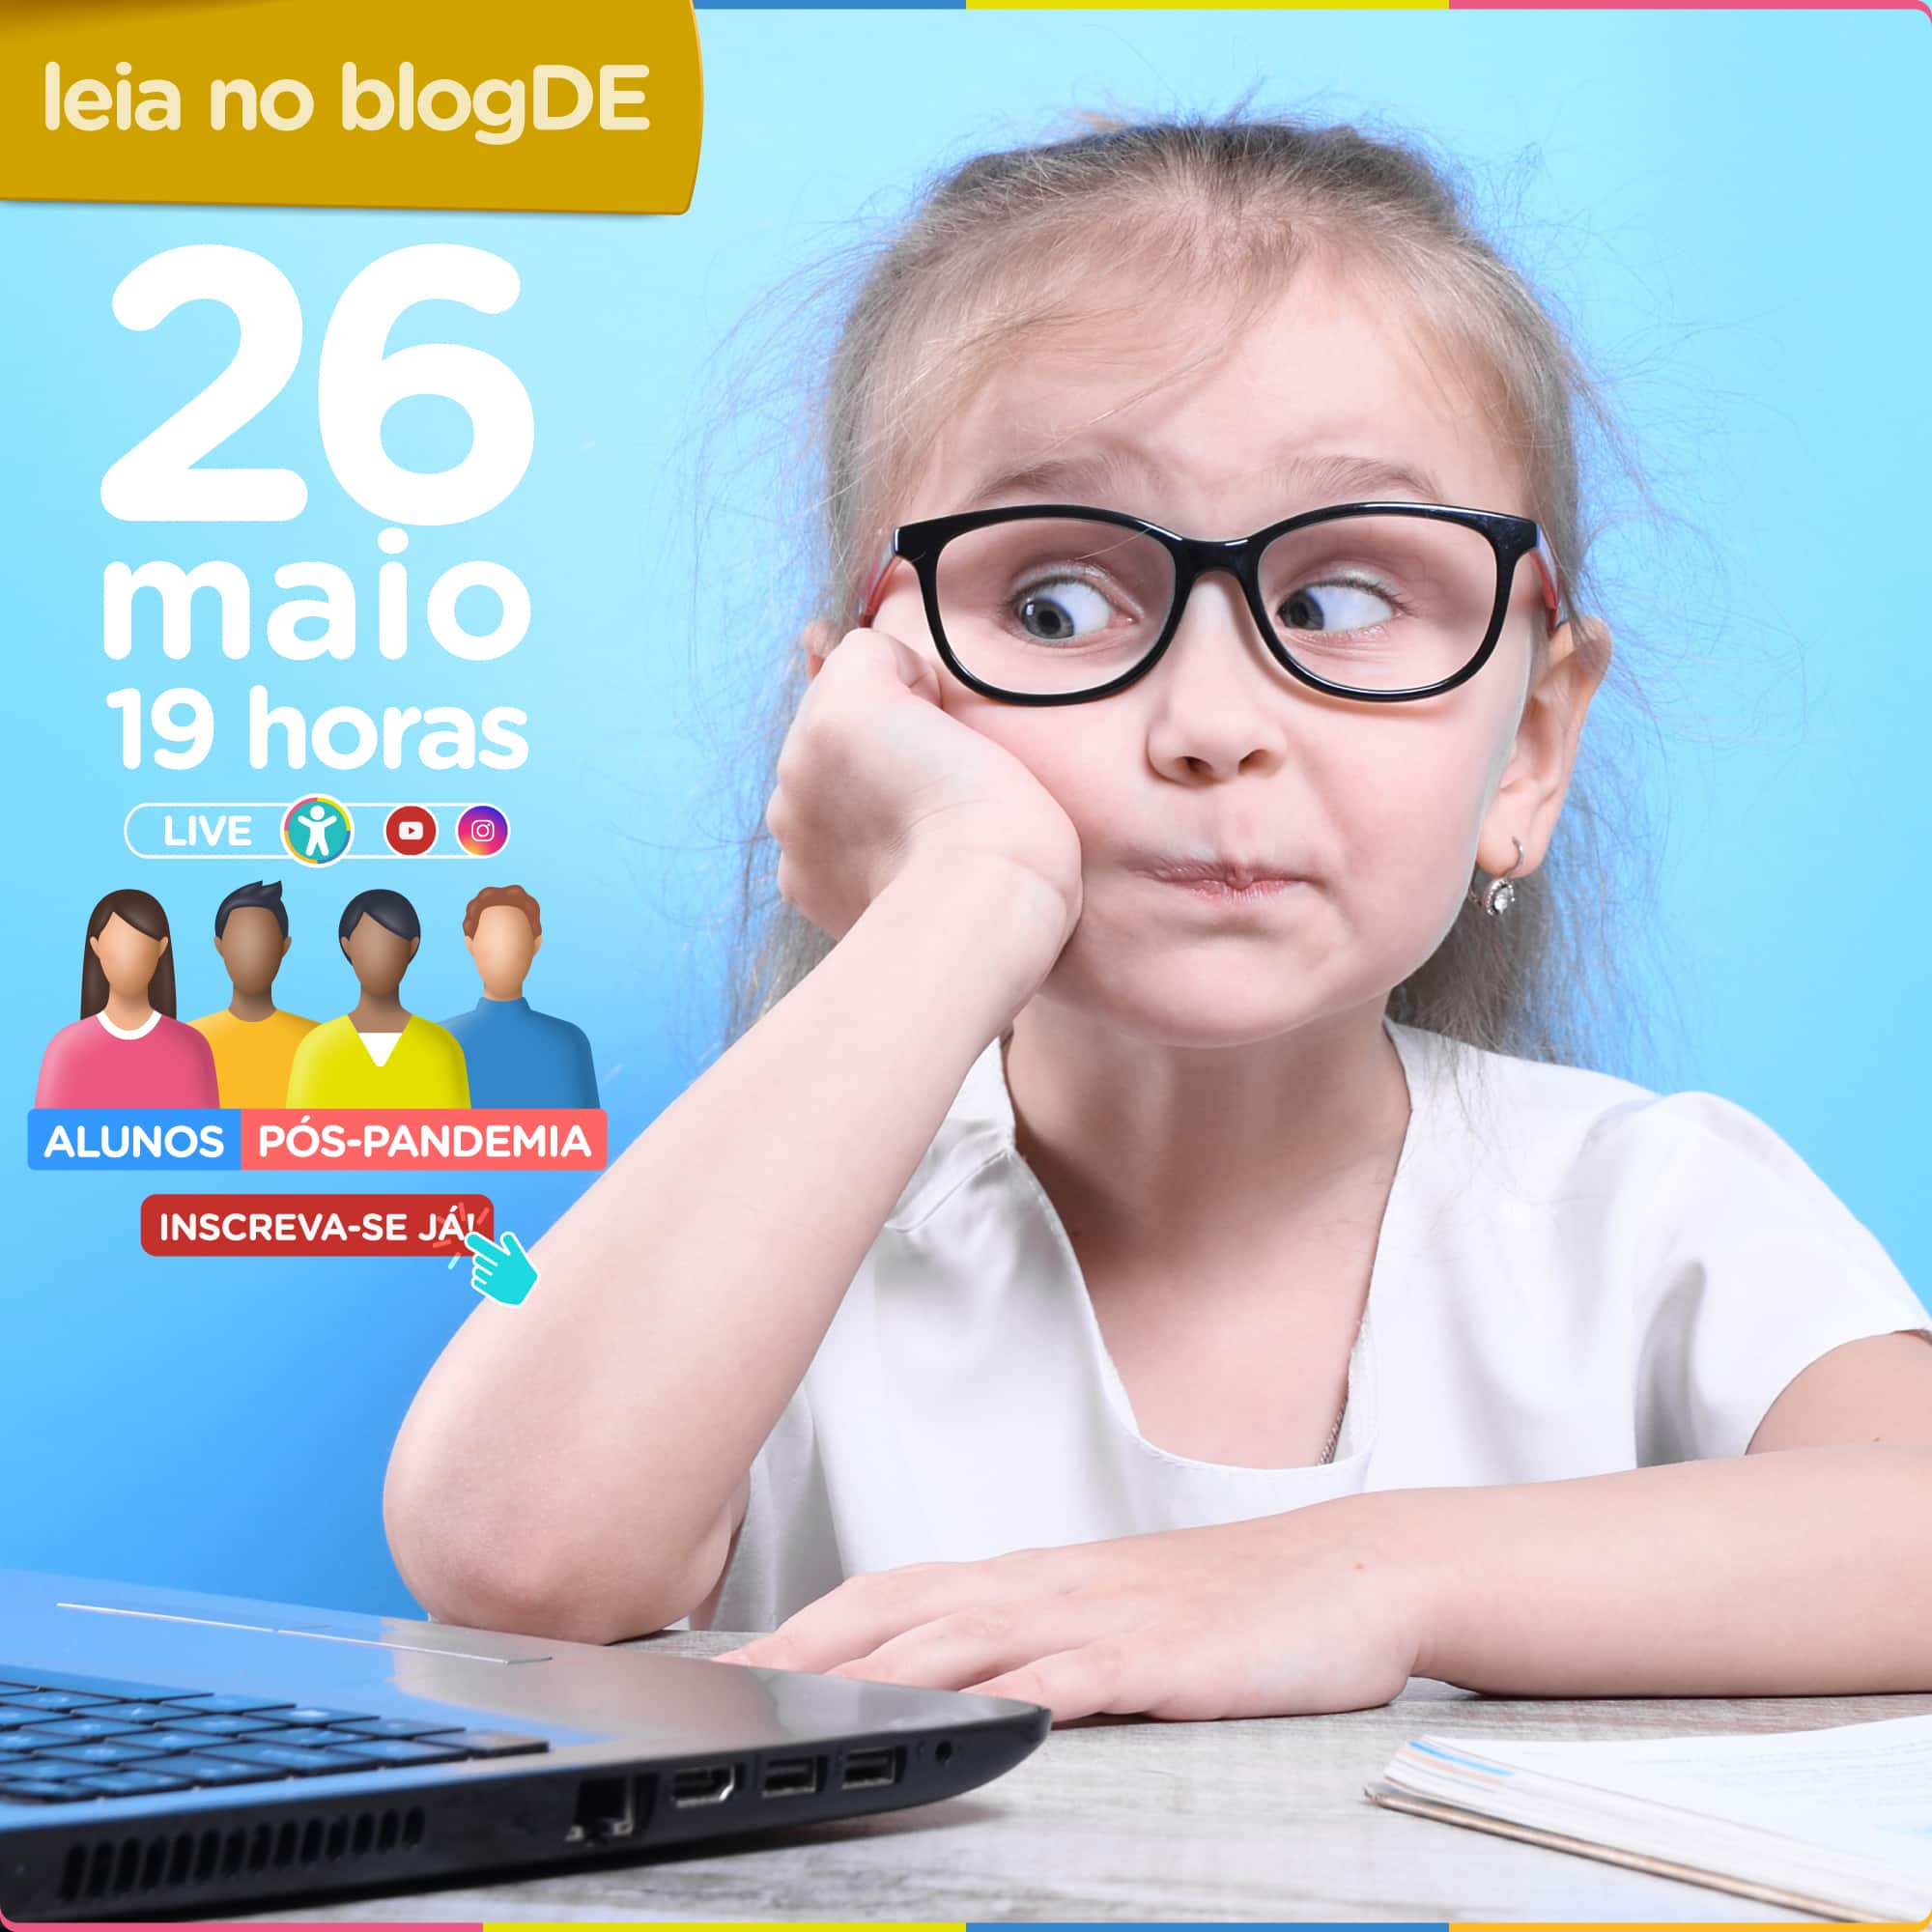 Alunos pós-pandemia: live do superApp Diário Escola